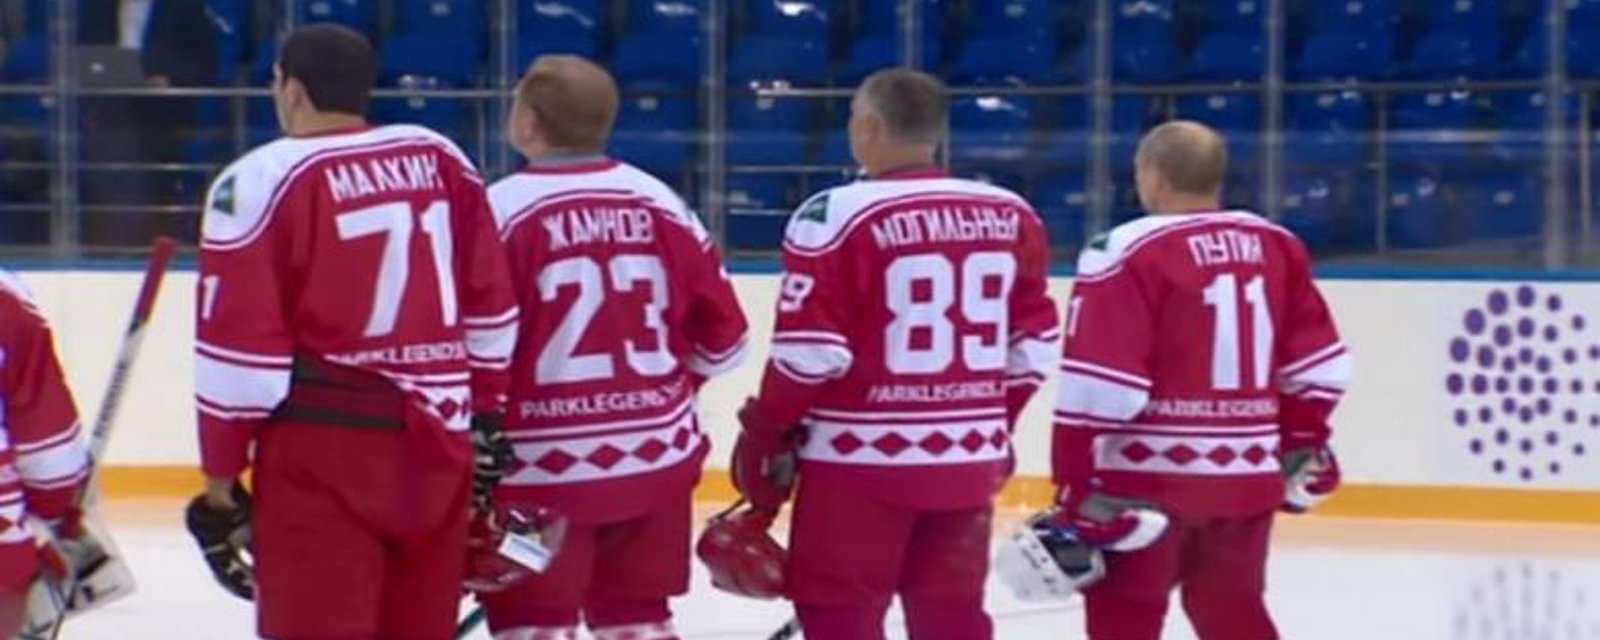 À VOIR: les talents de Vladimir Putin au hockey sont assez... limités